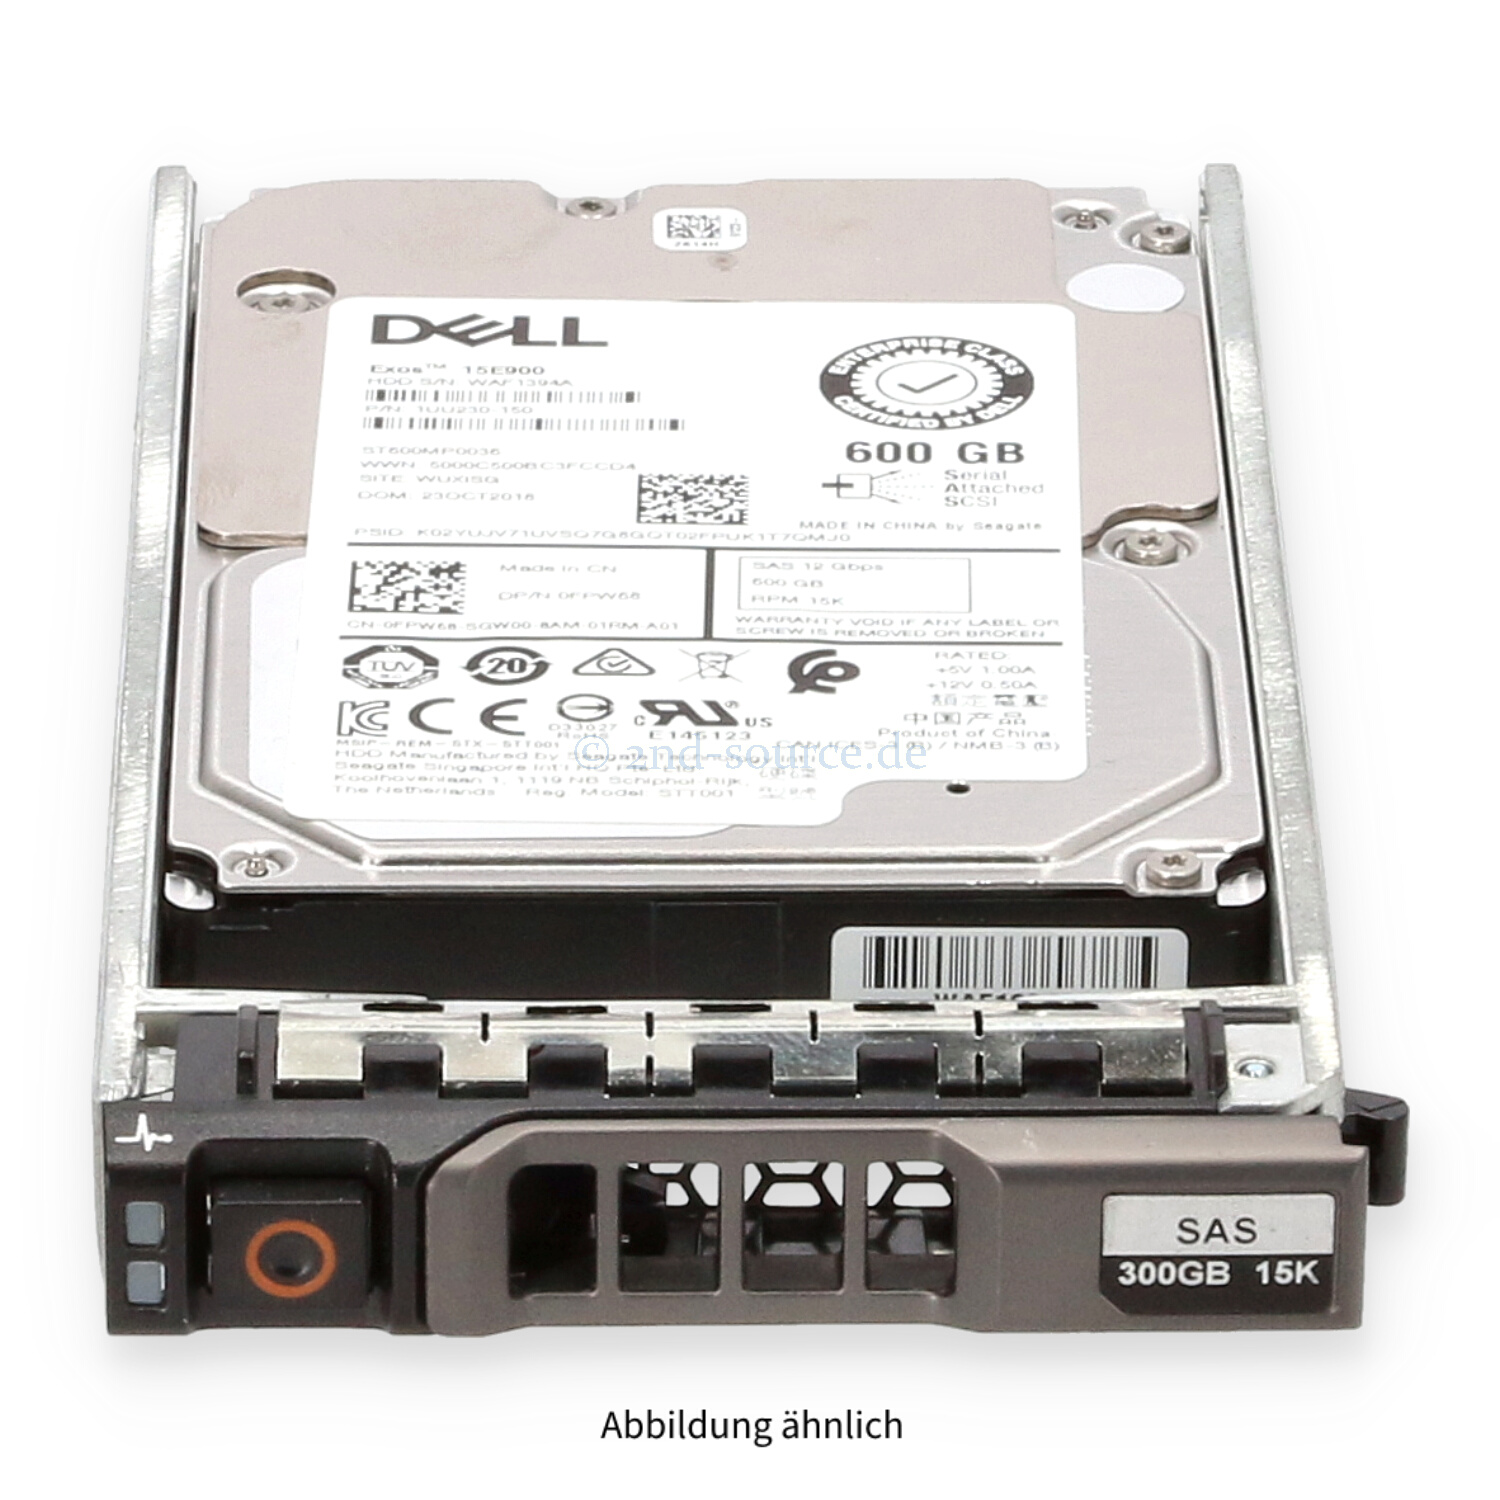 Dell 600GB 15k SAS 12G SFF HotPlug HDD FPW68 0FPW68